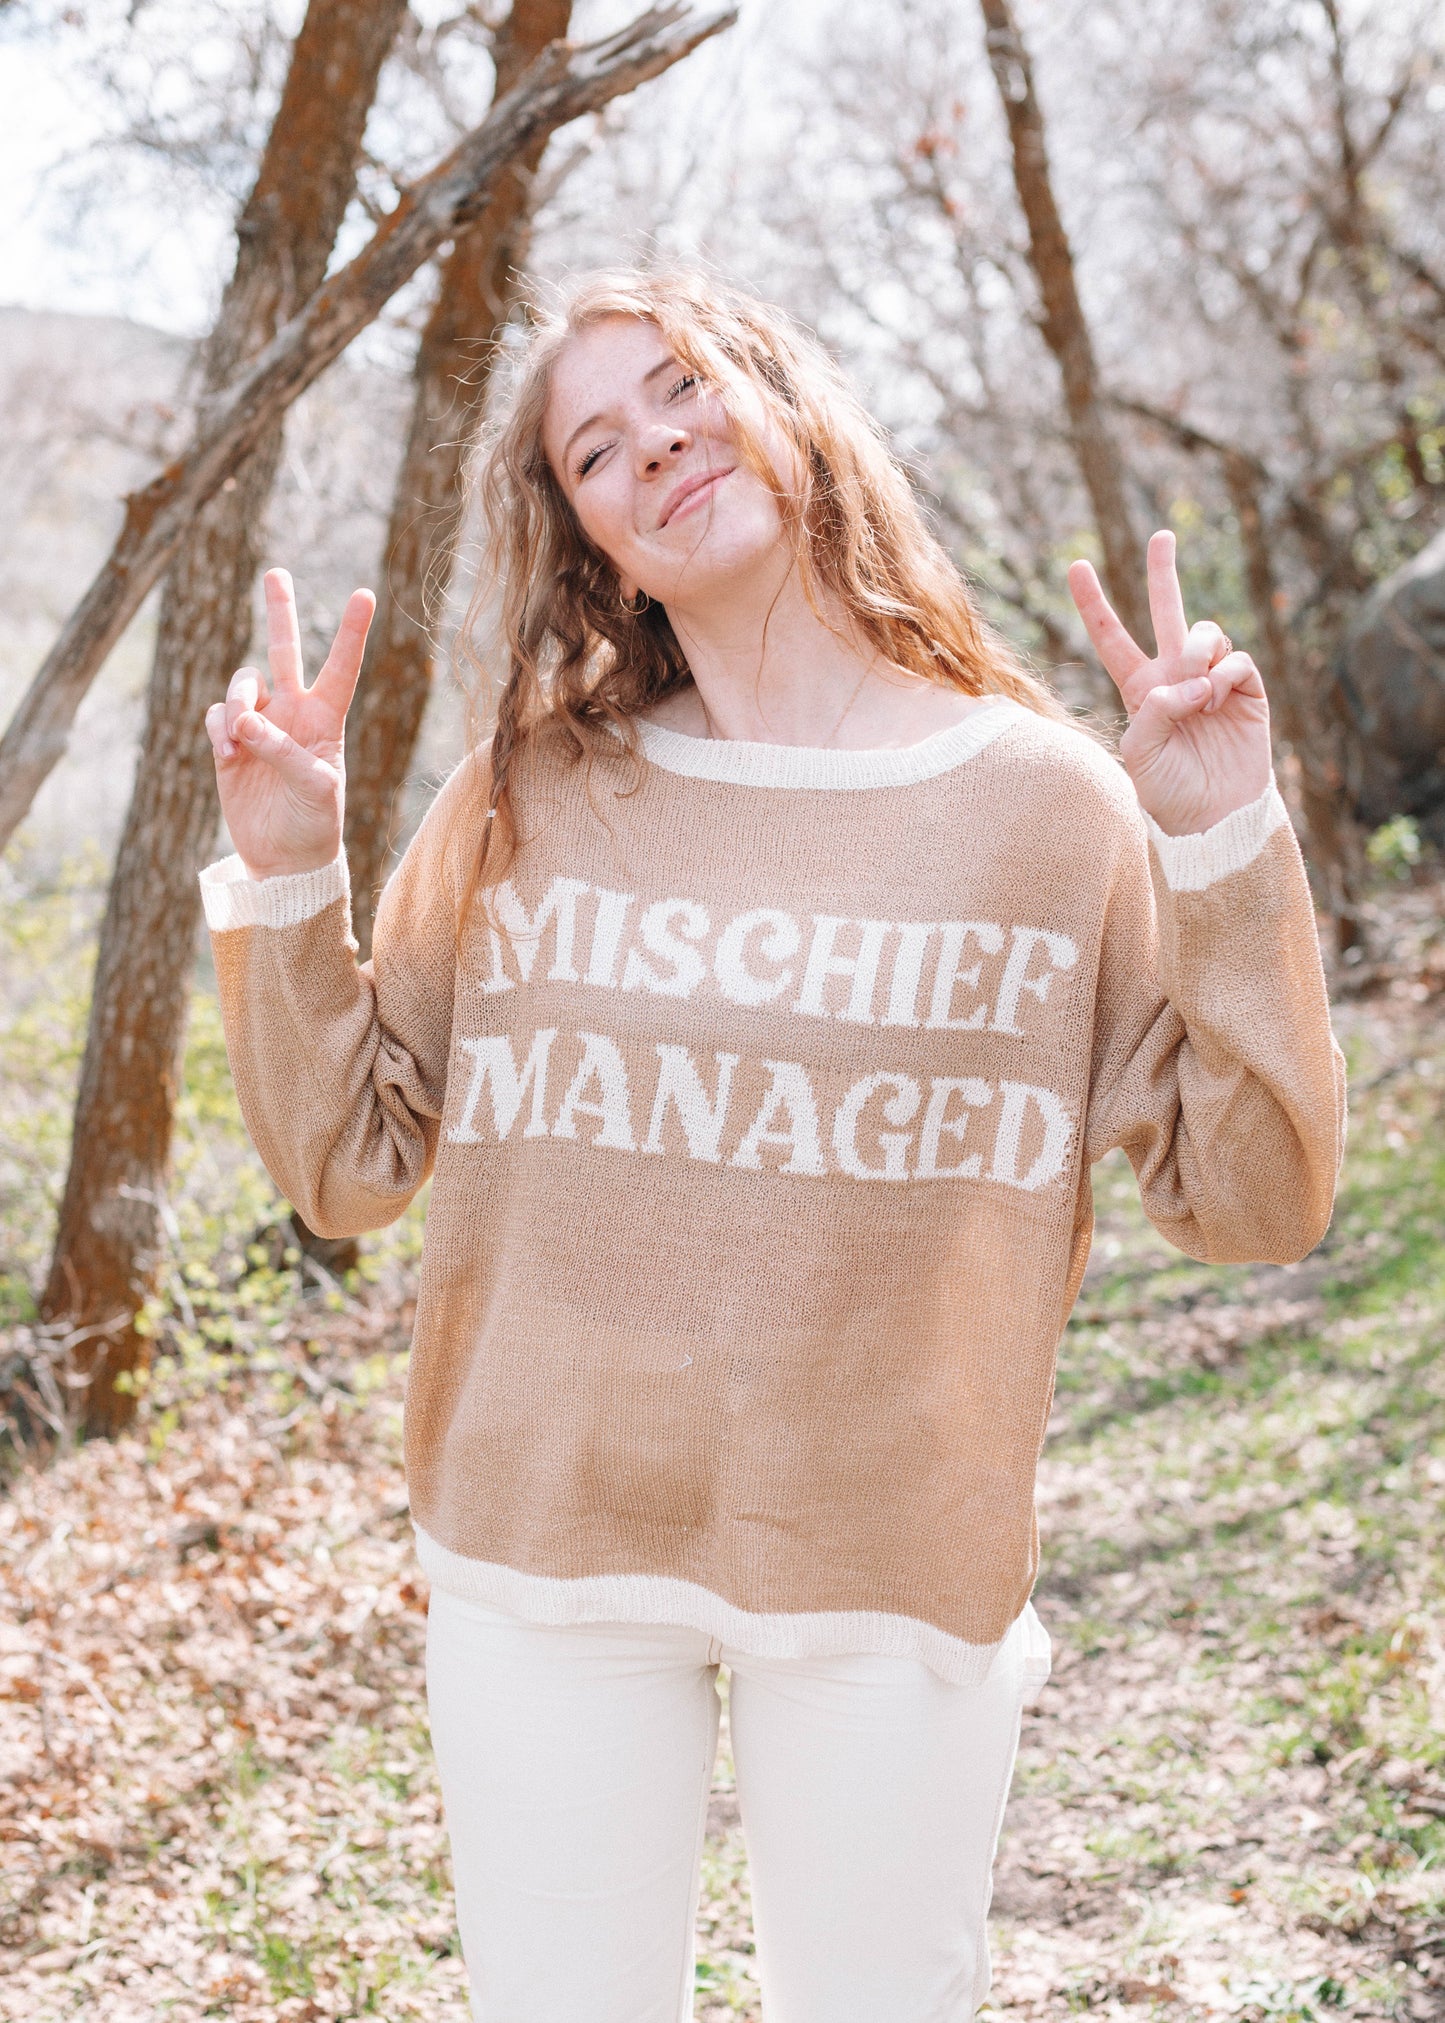 mischief managed sweater